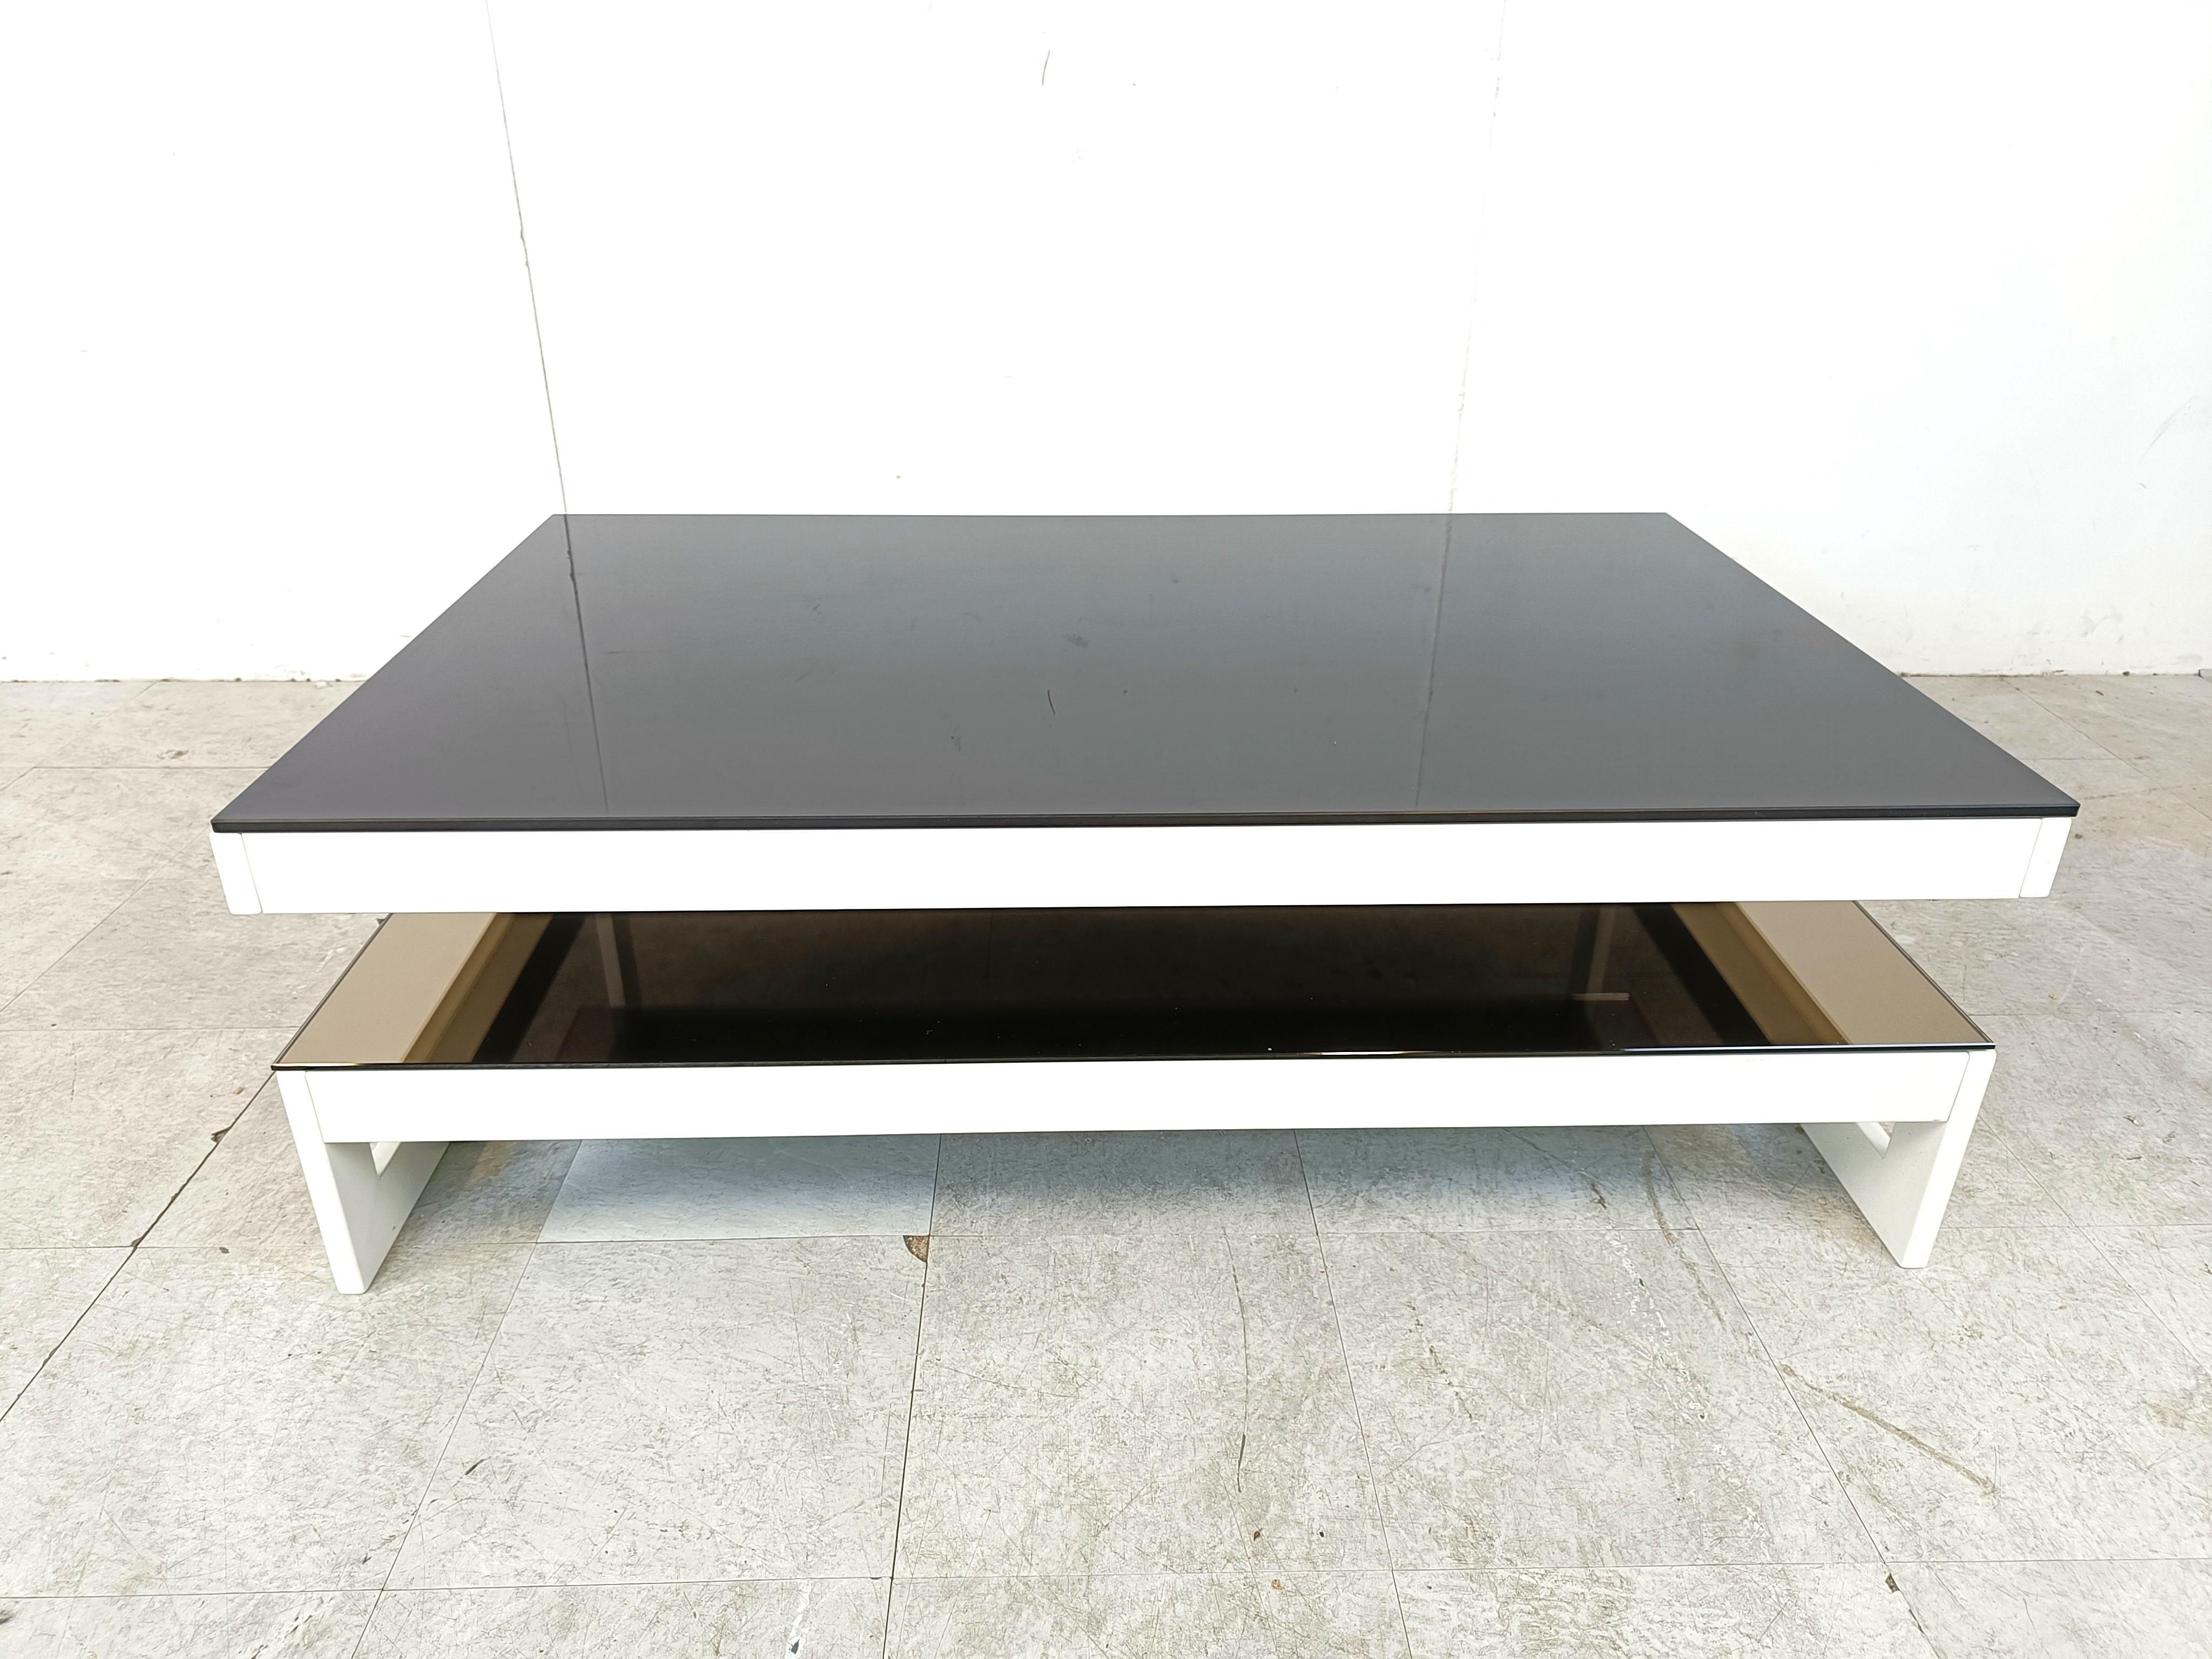 Très rare table basse à deux niveaux en métal laqué blanc fabriquée par Belgochrom.

Plateau en verre noir et verre inférieur en miroir.

La plupart du temps, ces modèles sont en or 23kt, mais il s'agit ici d'un très rare modèle blanc